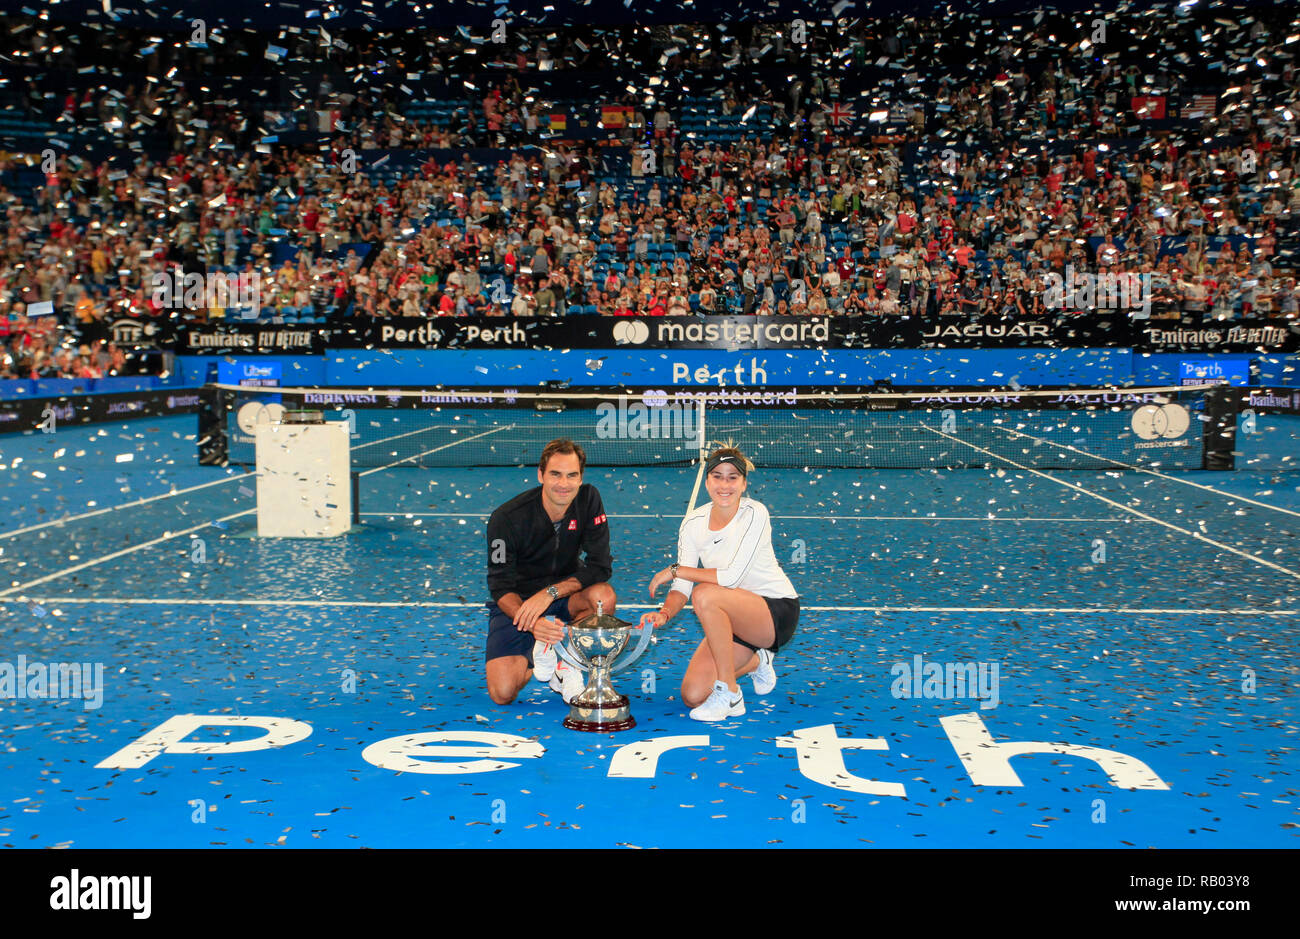 RAC Arena, Perth, Australia. 5th Jan, 2019. Hopman Cup Tennis, sponsored by  Mastercard; Belinda Bencic and